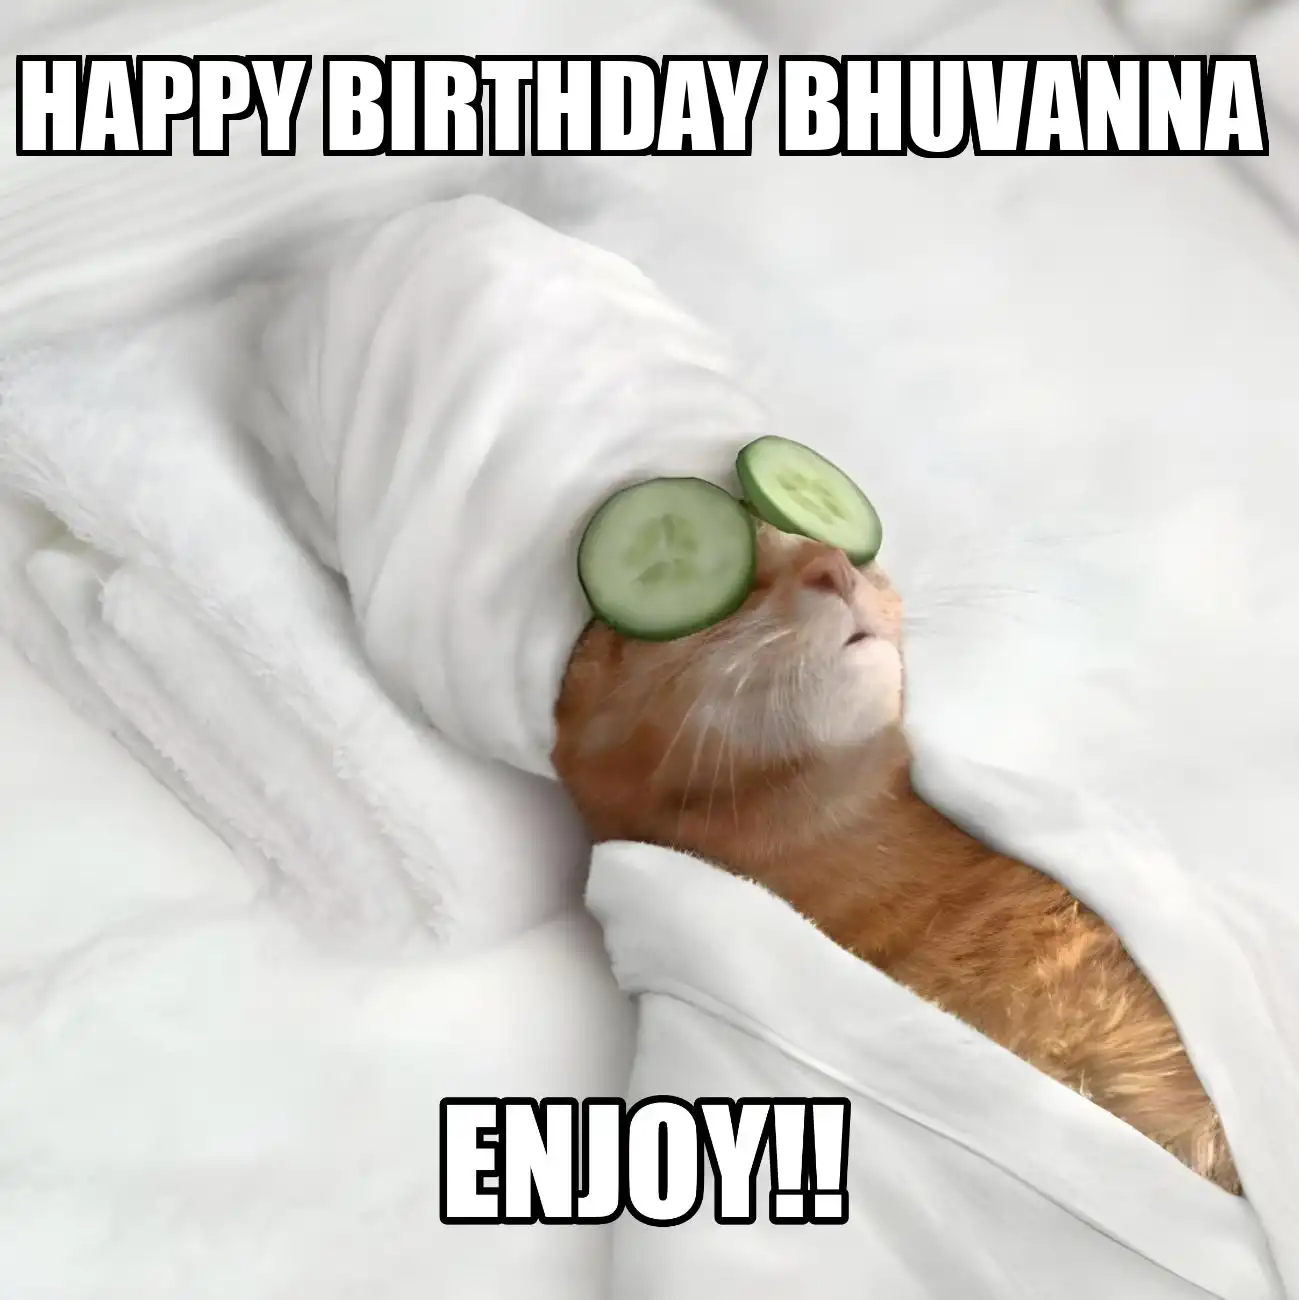 Happy Birthday Bhuvanna Enjoy Cat Meme